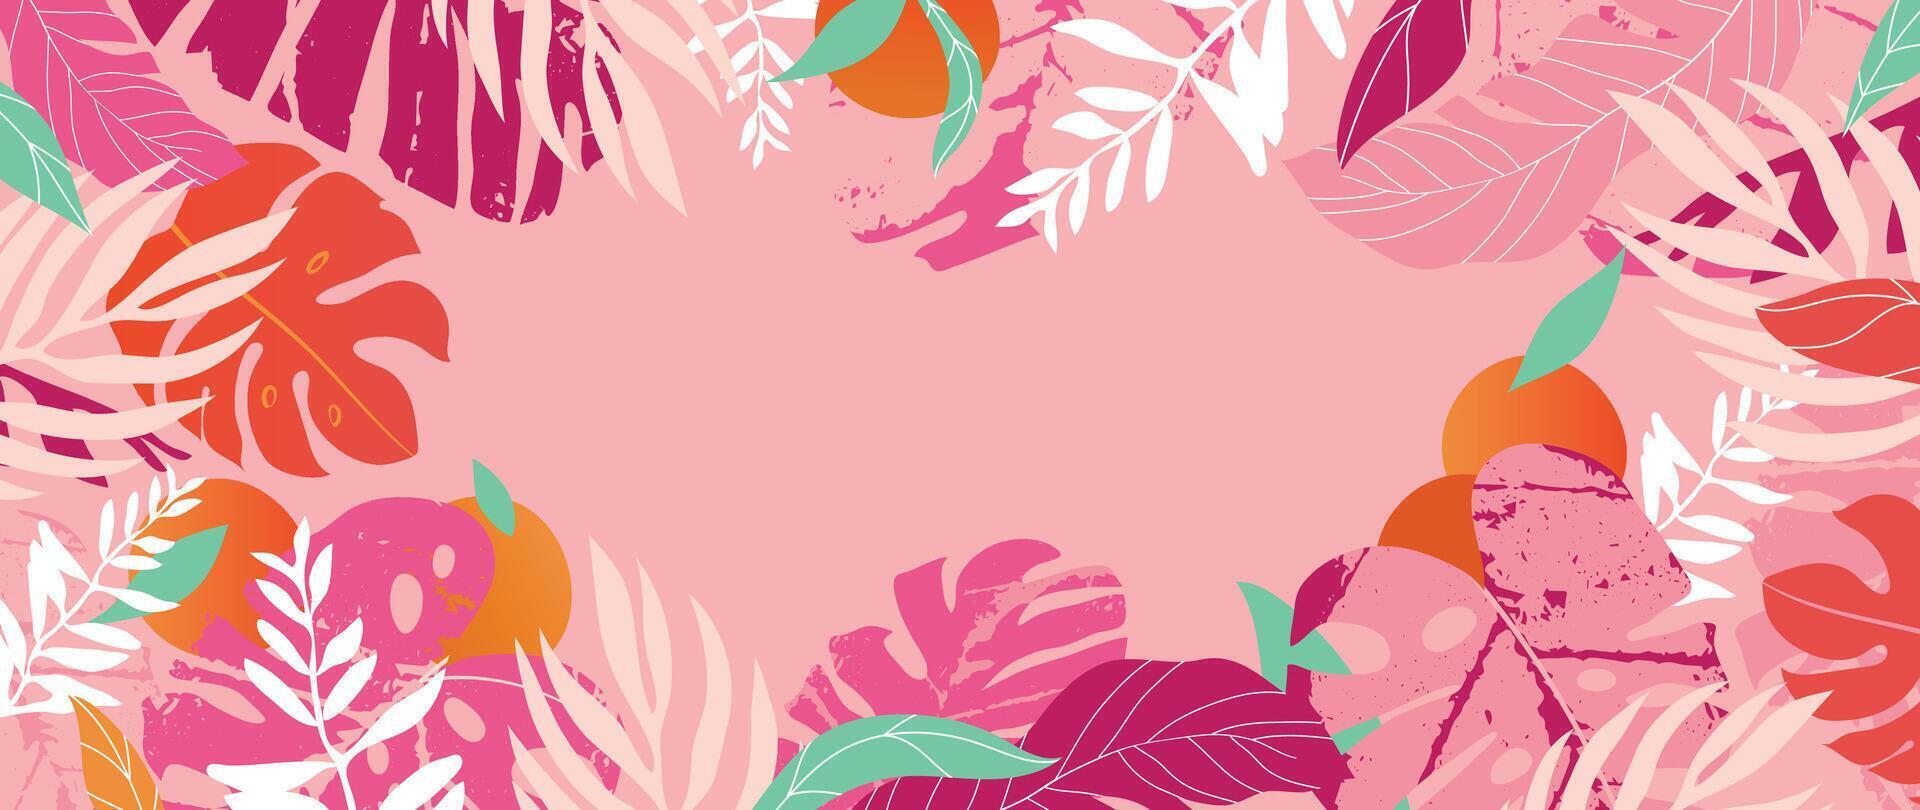 sommar tropisk djungel rosa bakgrund vektor. färgrik botanisk med exotisk växt, blommor, handflatan löv, frukt, grunge textur. Lycklig sommartid illustration för affisch, omslag, baner, grafik. vektor